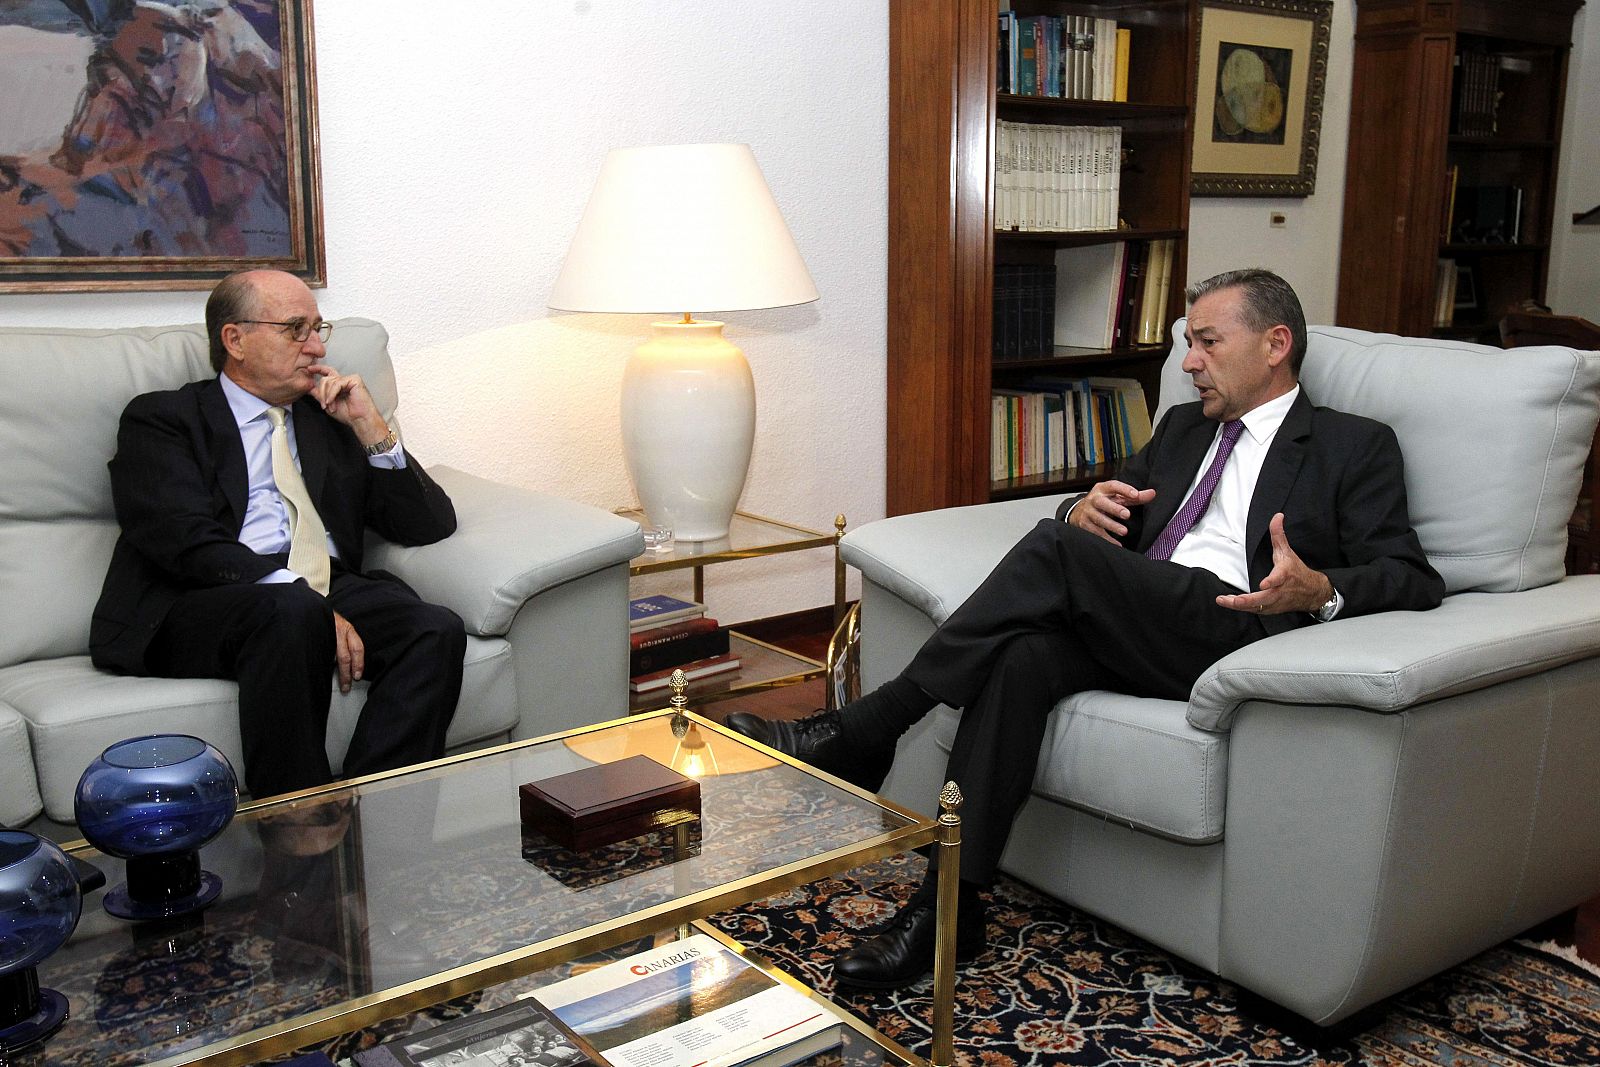 El presidente del Gobierno de Canarias, Paulino Rivero y el presidente de Repsol, Antonio Brufau, durante la reunión que han mantenido en la Casa de Canarias en Madrid